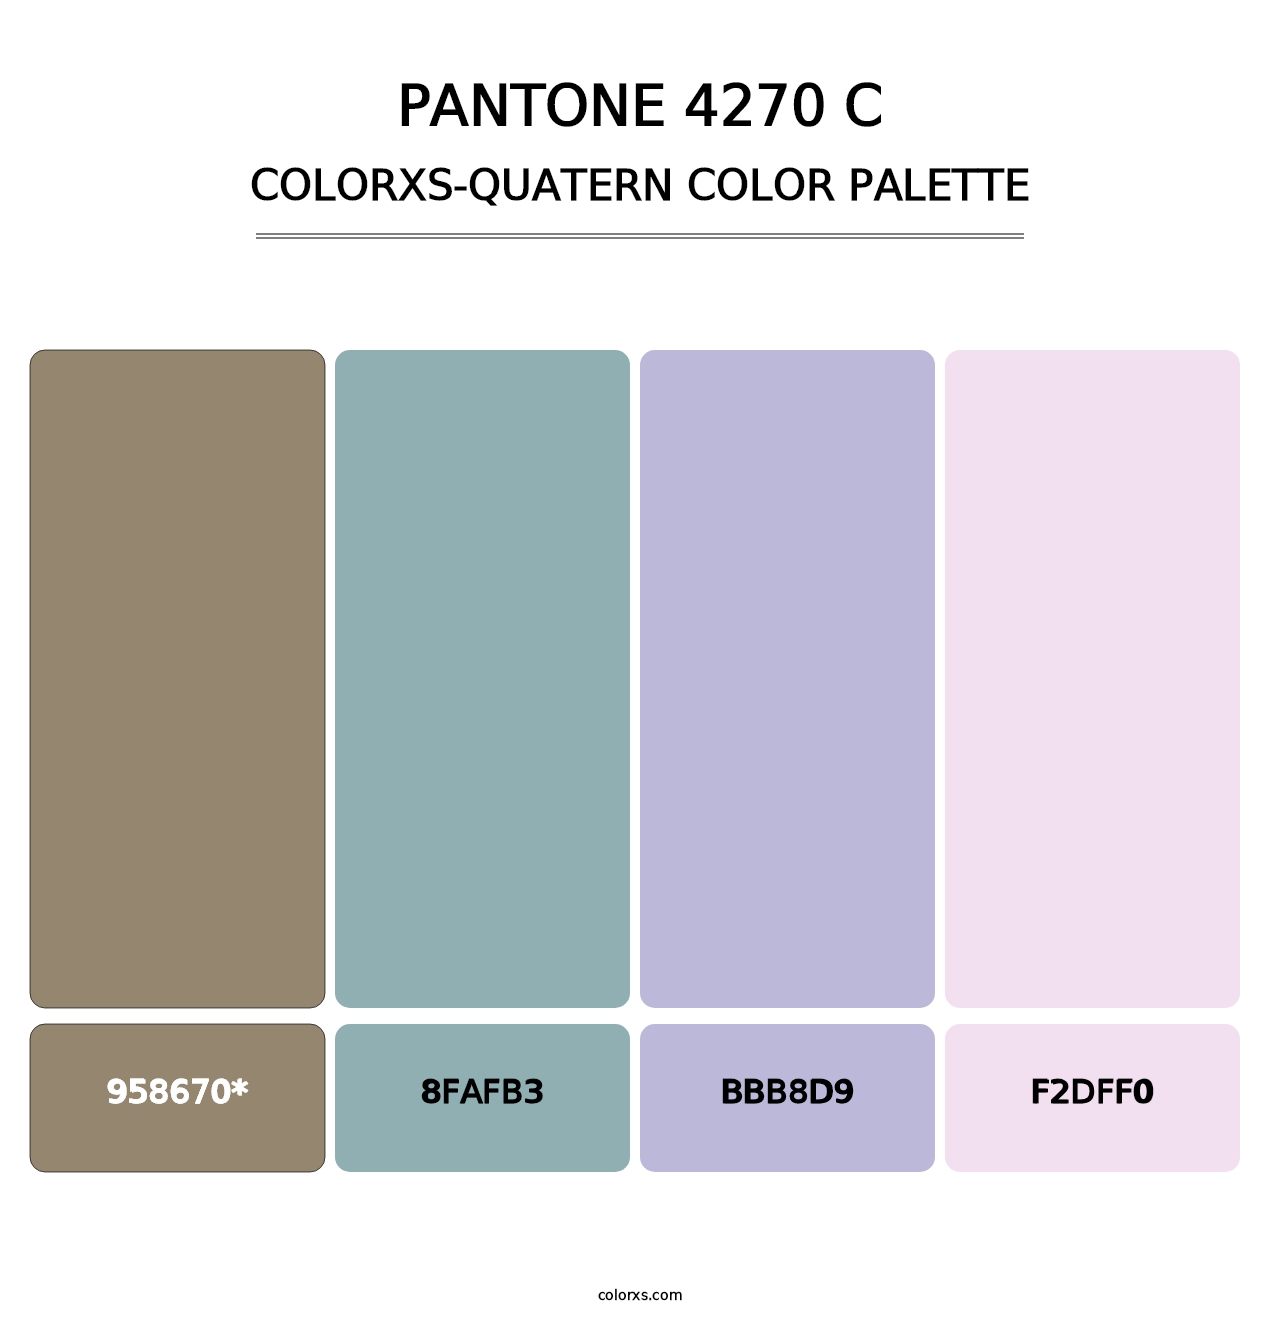 PANTONE 4270 C - Colorxs Quatern Palette